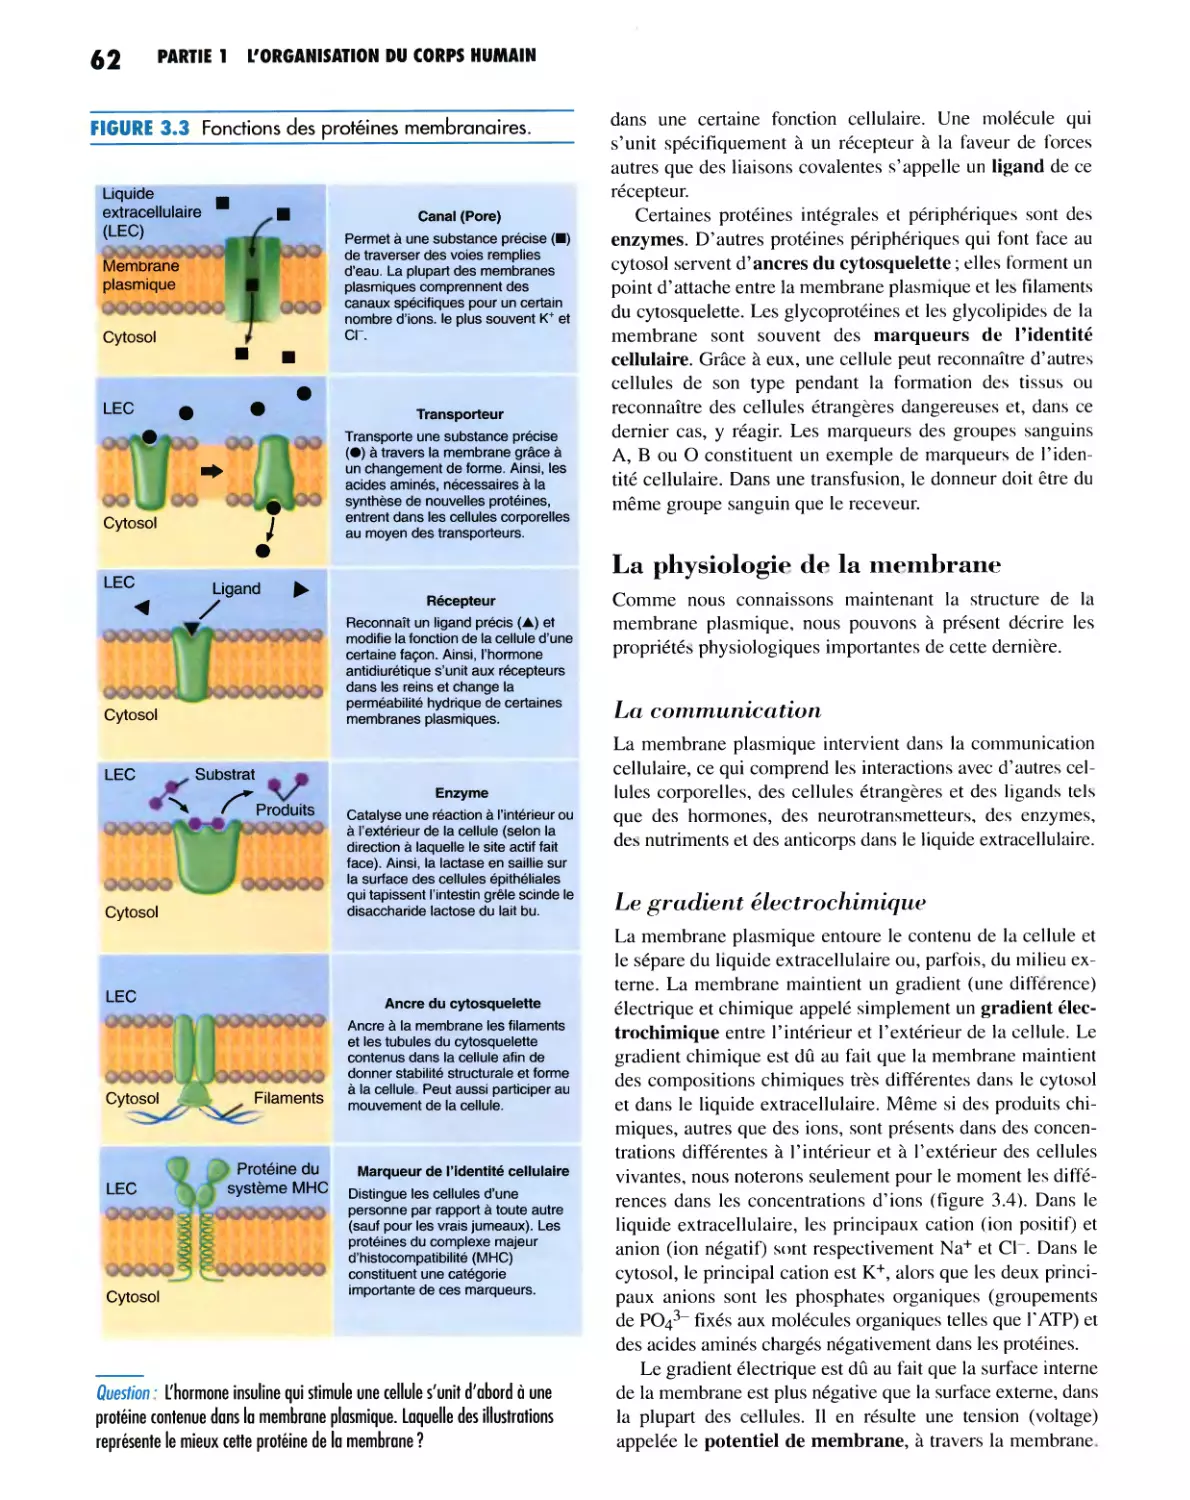 La physiologie de la membrane
Le gradient électrochimique